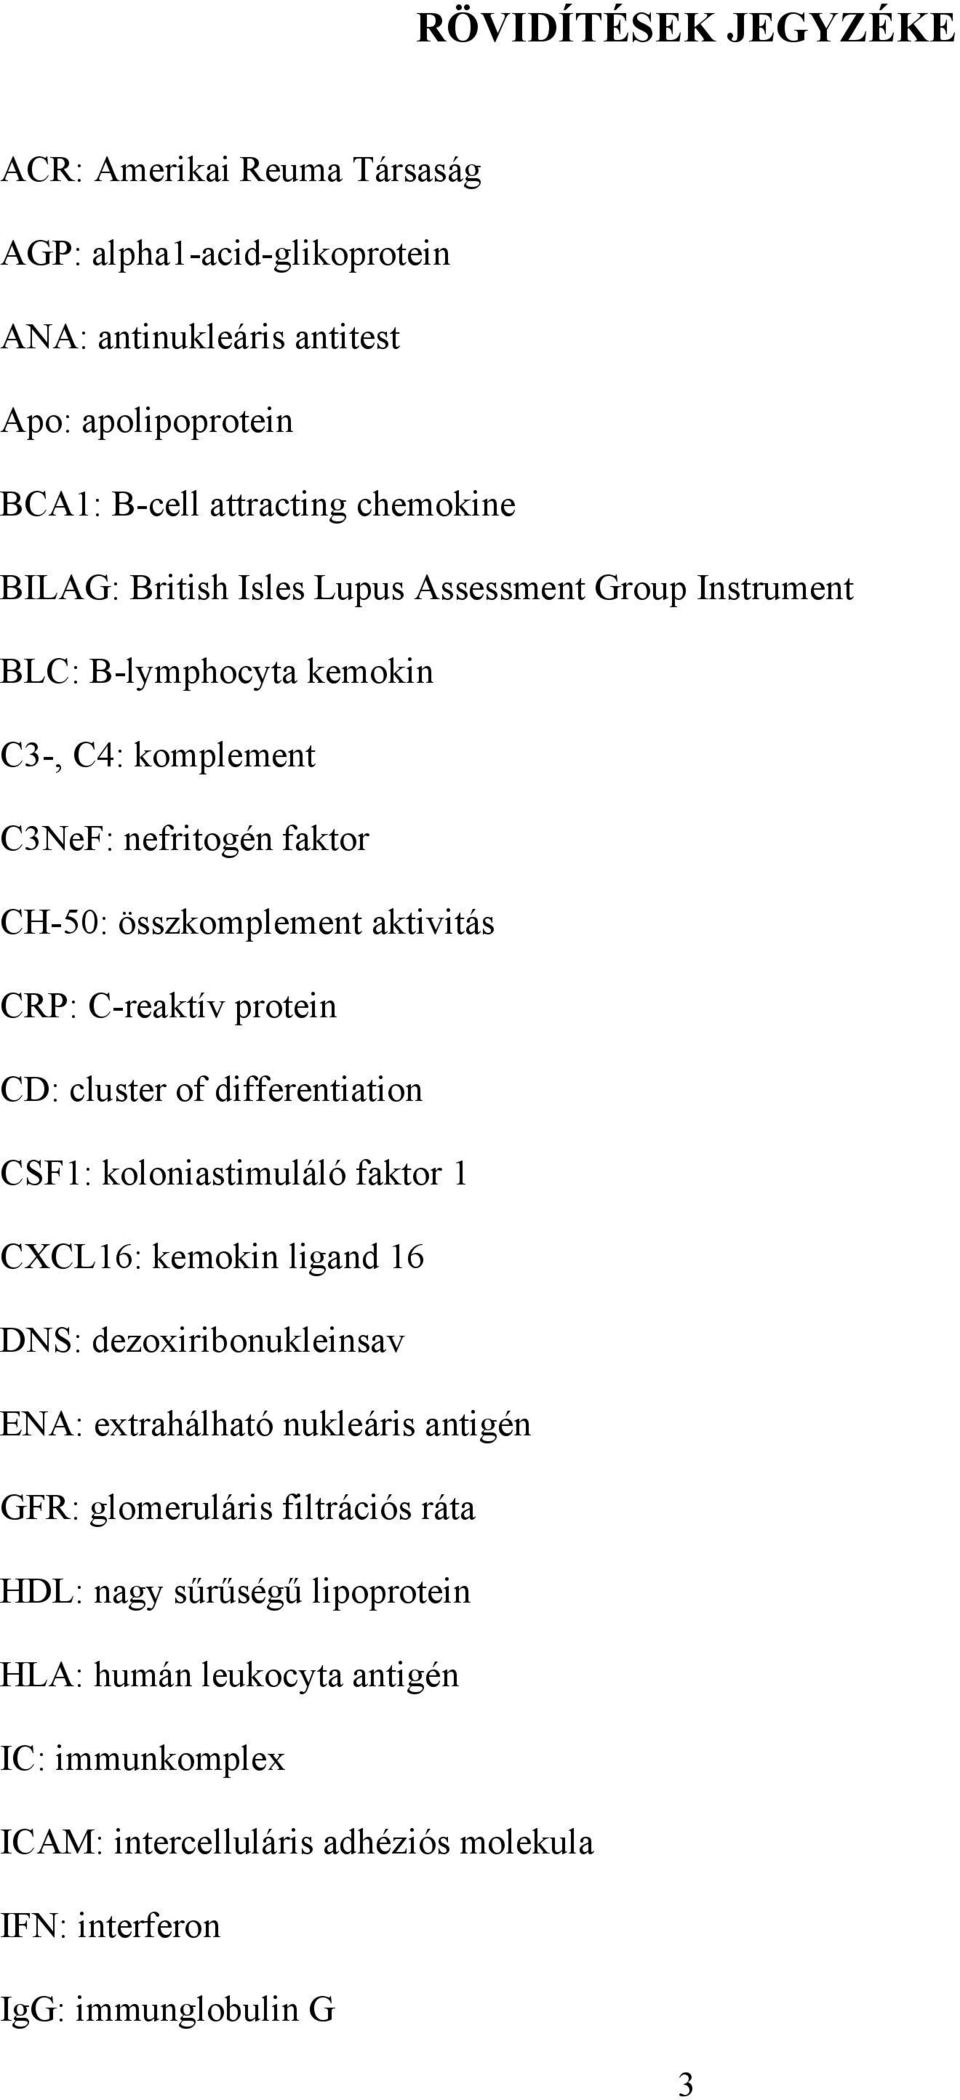 protein CD: cluster of differentiation CSF1: koloniastimuláló faktor 1 CXCL16: kemokin ligand 16 DNS: dezoxiribonukleinsav ENA: extrahálható nukleáris antigén GFR: